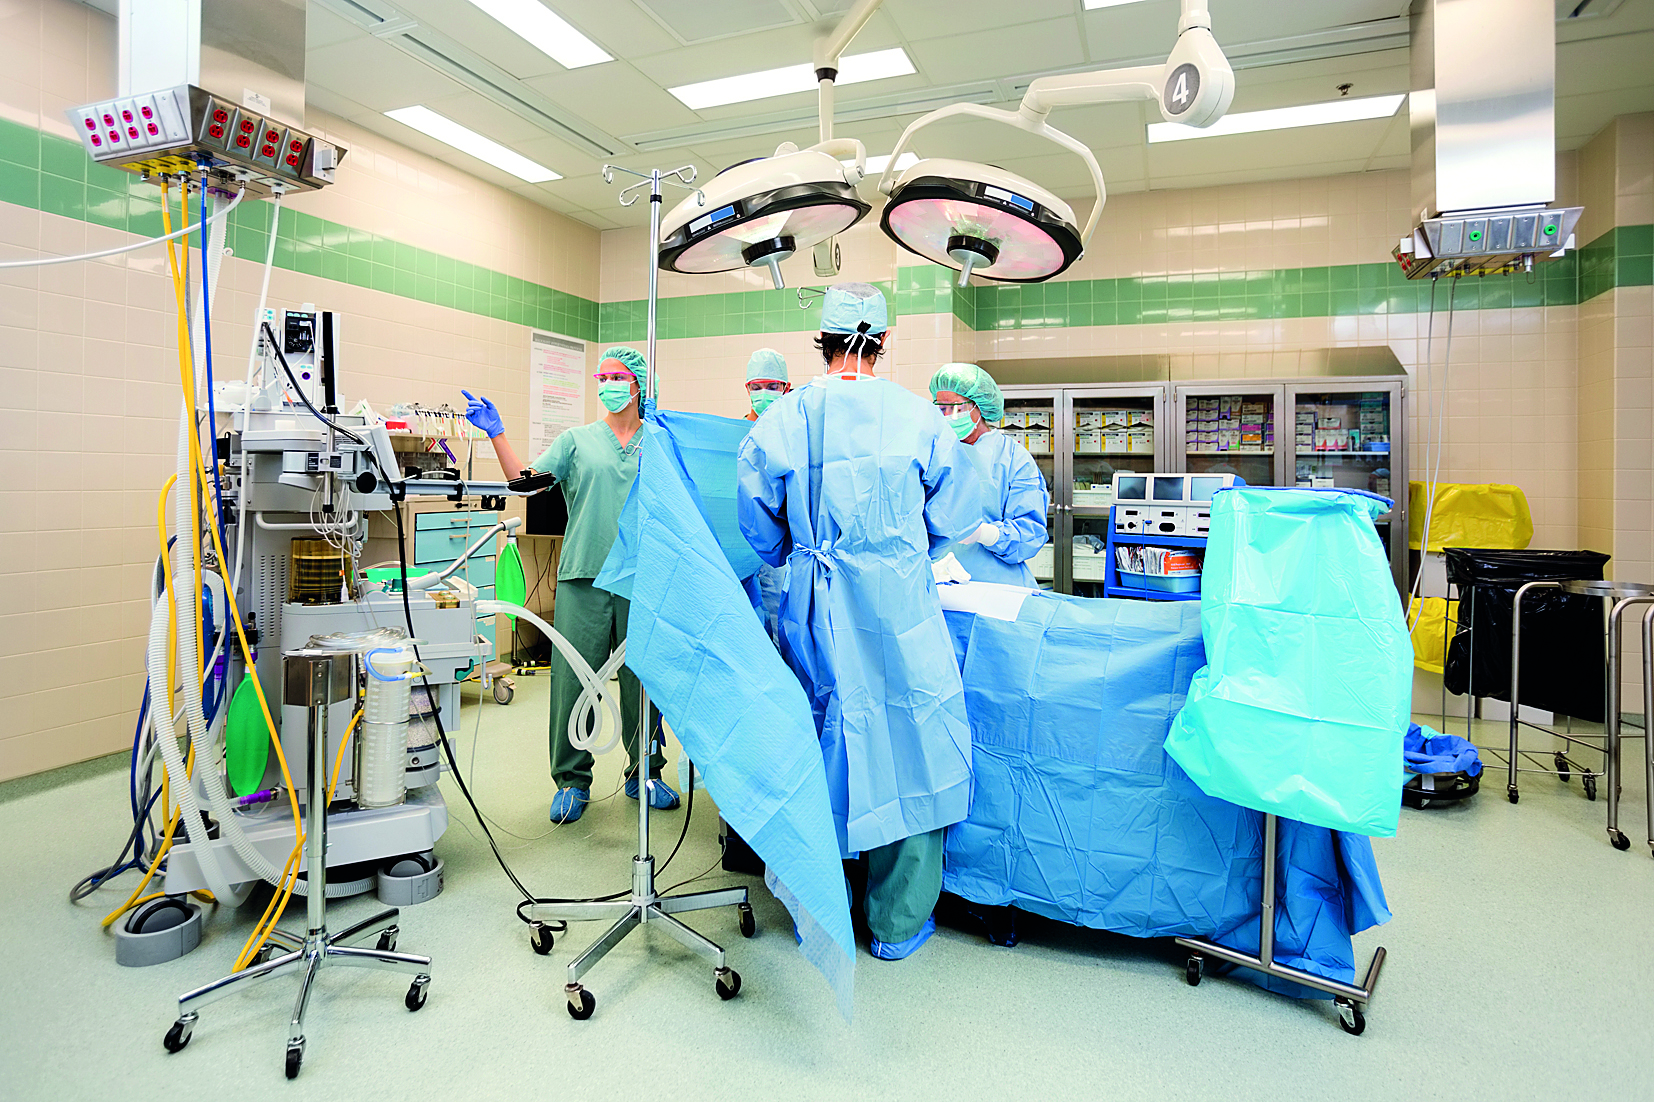 Λίστα χειρουργείου καθιερώνεται στα Νοσοκομεία - Ειδήσεις - νέα - Το Βήμα Online